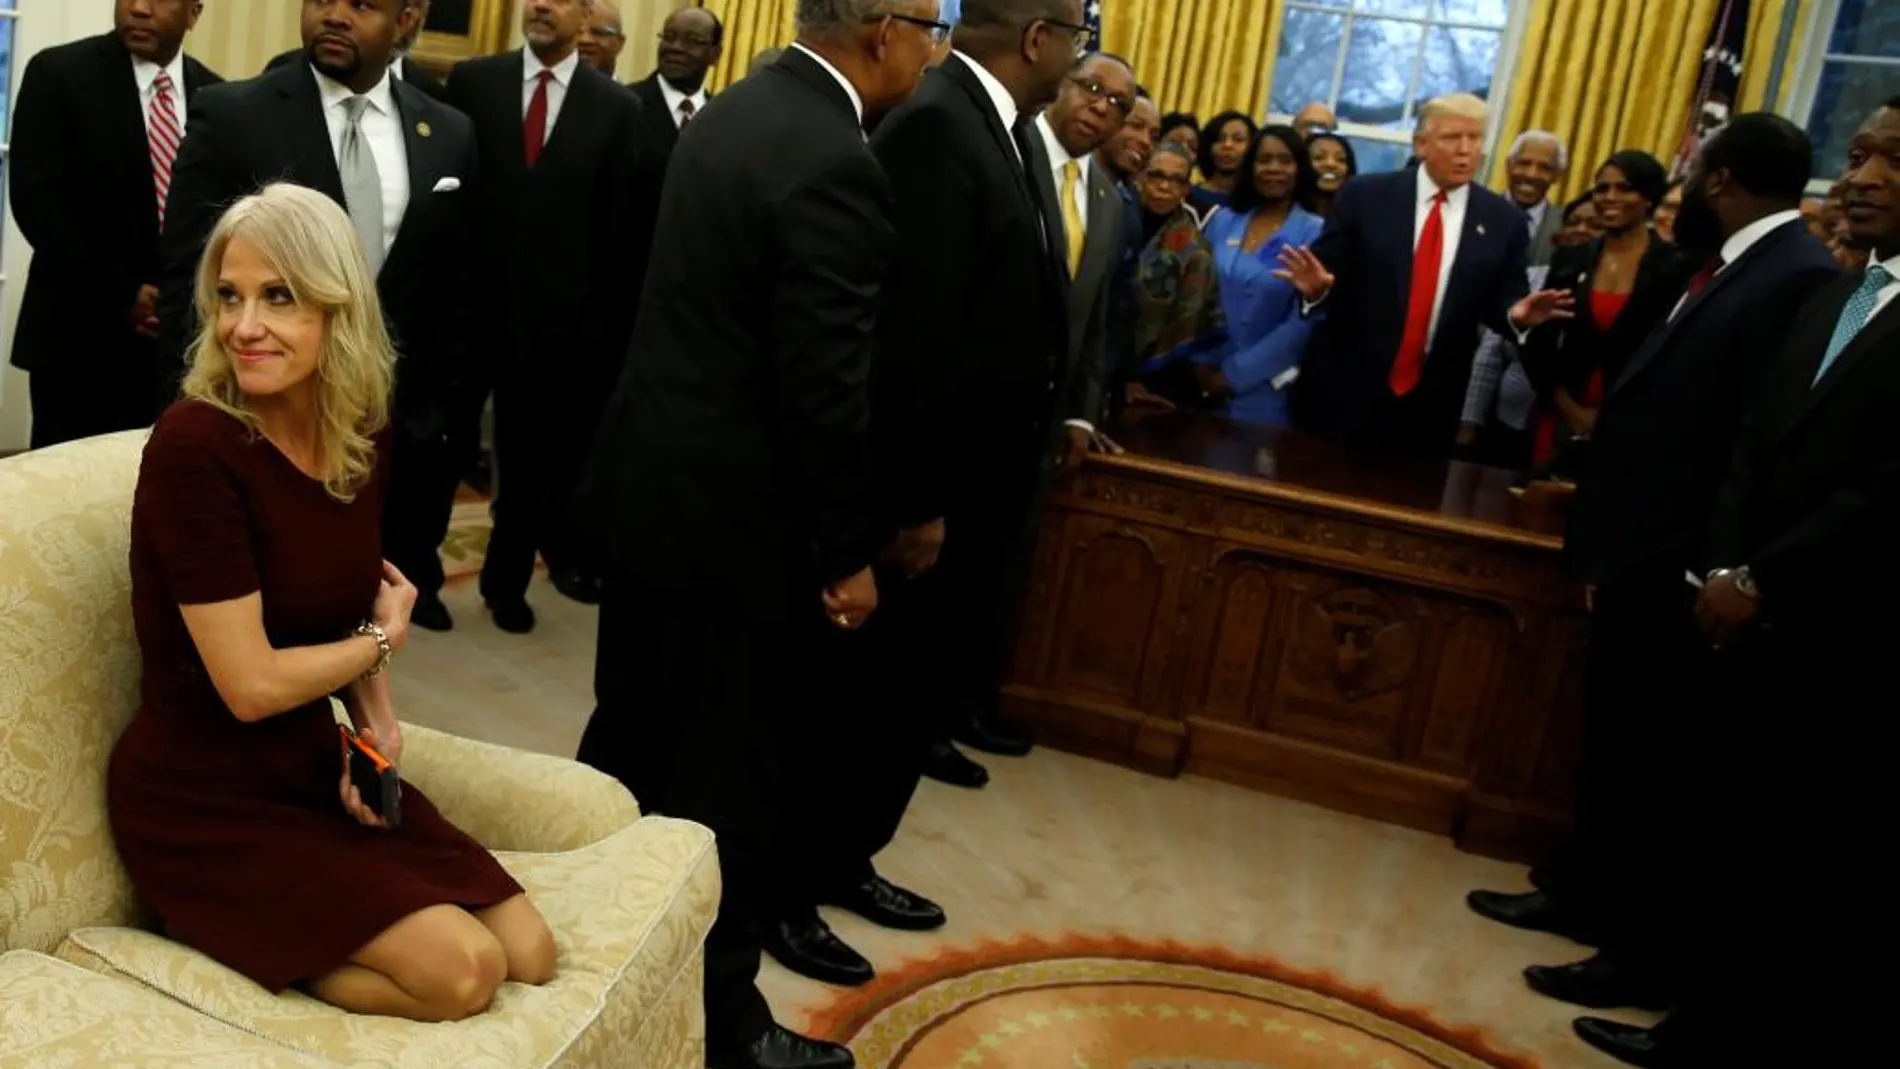 Críticas a Kellyanne Conway, consejera de Trump, por subirse a un sofá del Despacho Oval con los zapatos puestos